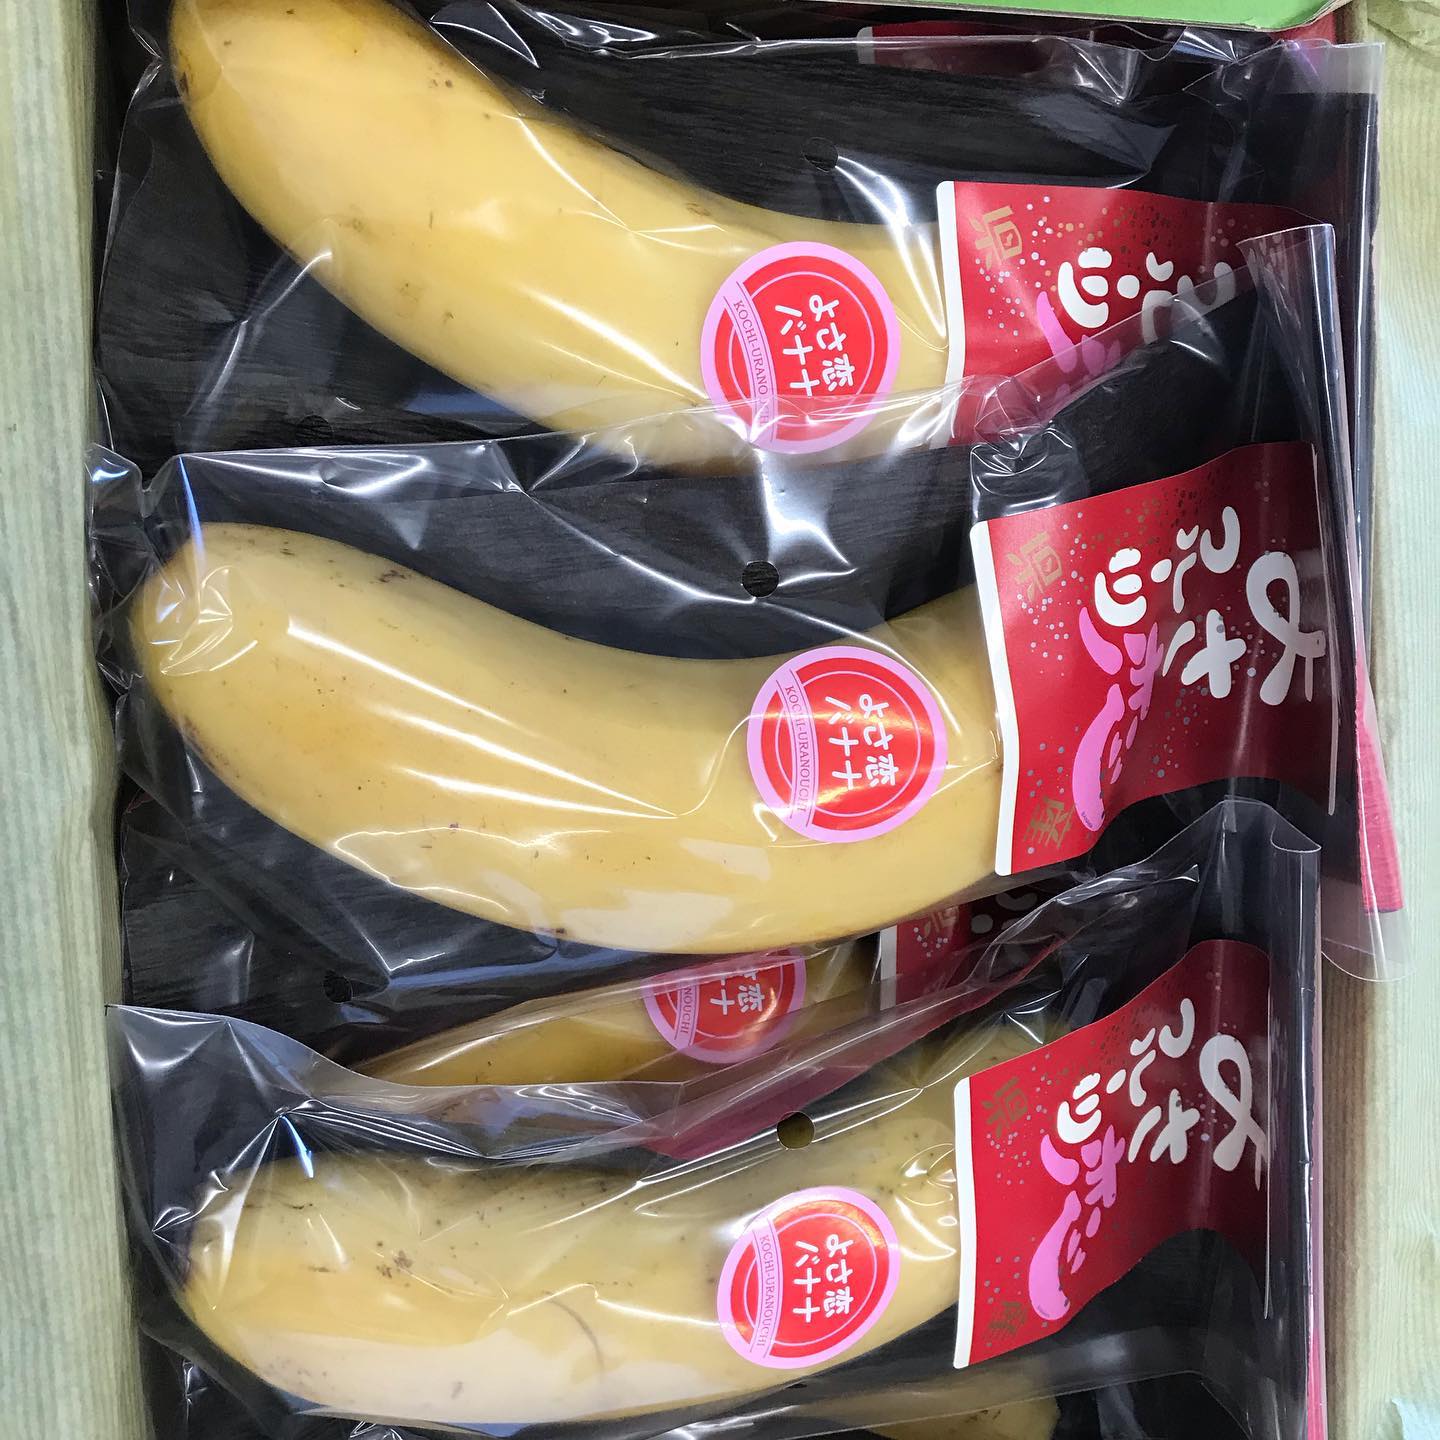 【武田くだもの店】国産のバナナが入荷しました。須崎市浦の内の藤田さんが20年くらい前から栽培しています。詳しくはこちらをご覧ください。http://kochisodachi.com/?pid=142404814#よさ恋バナナ#日曜市くだもの #武田くだもの店#武田青果 #ウエルカムホテル高知から西へすぐ